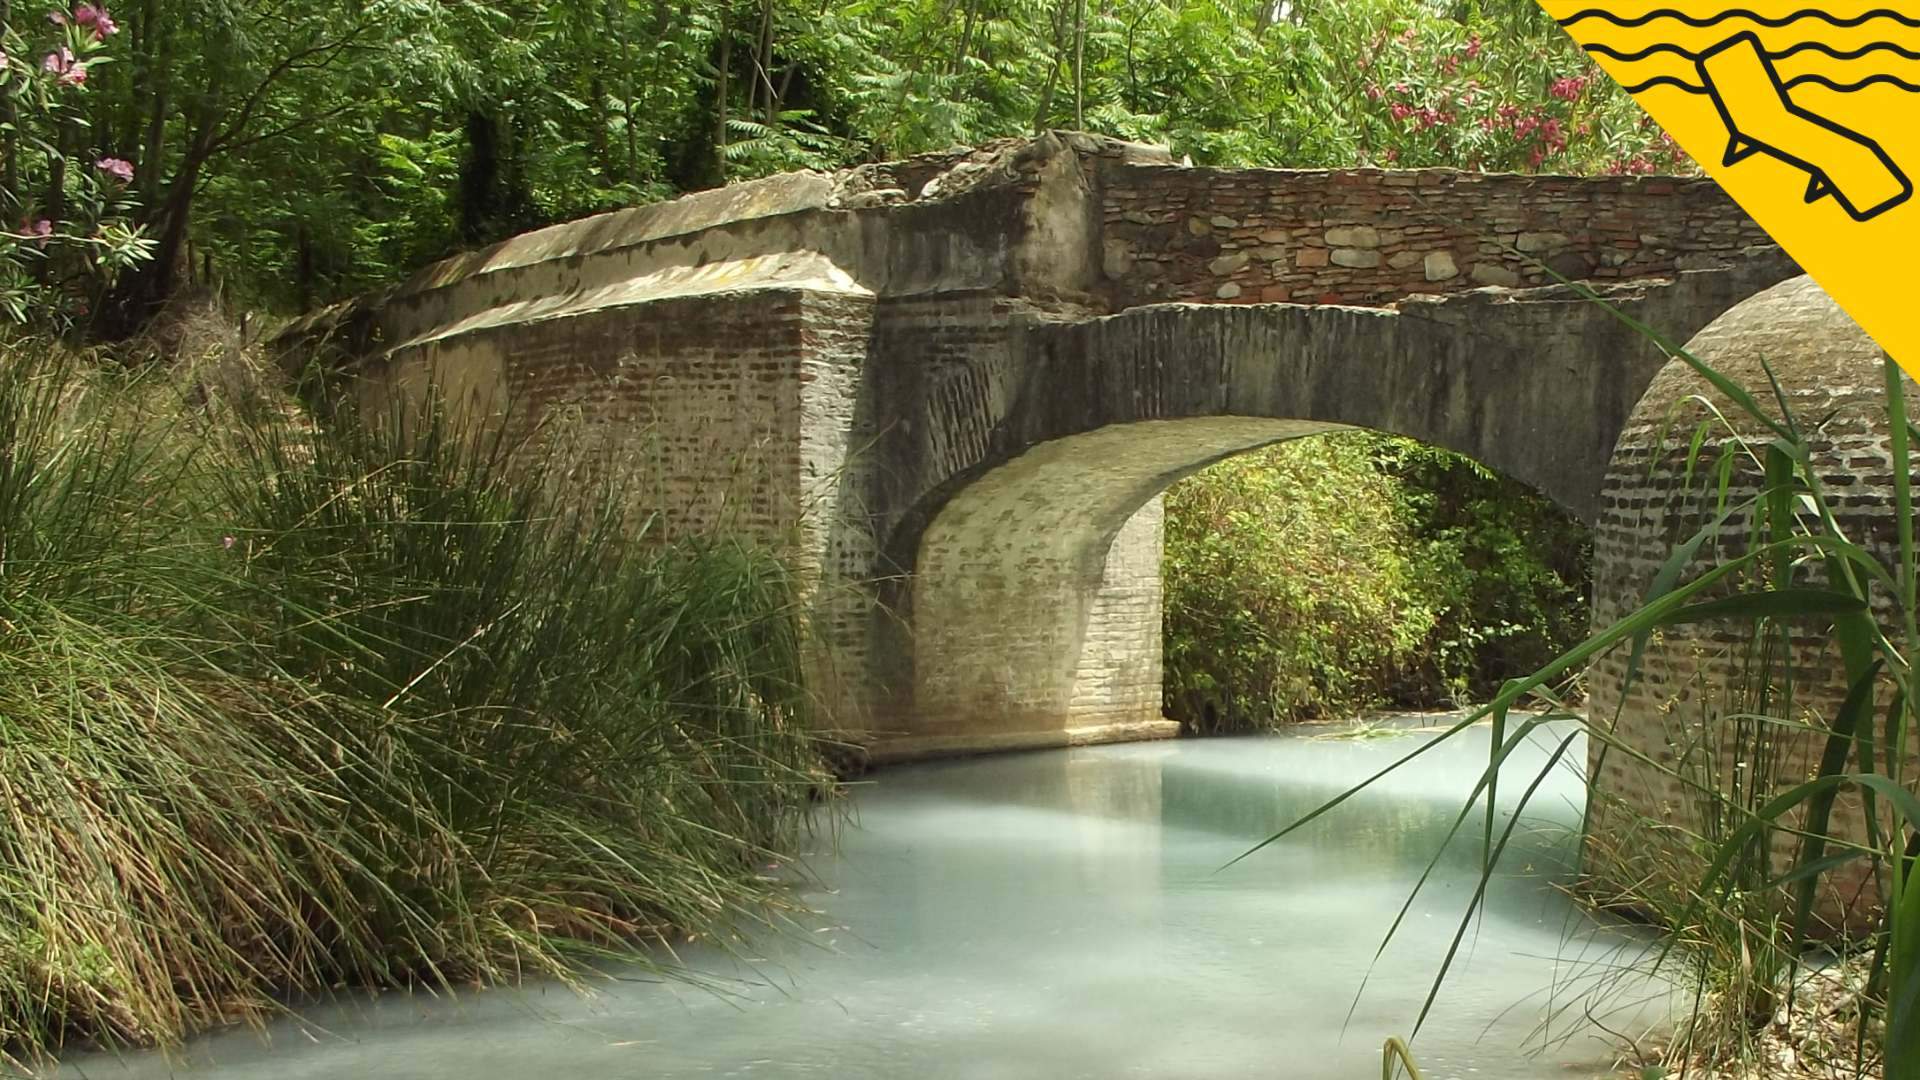 Las aguas termales con propiedades curativas donde se bañó Julio César